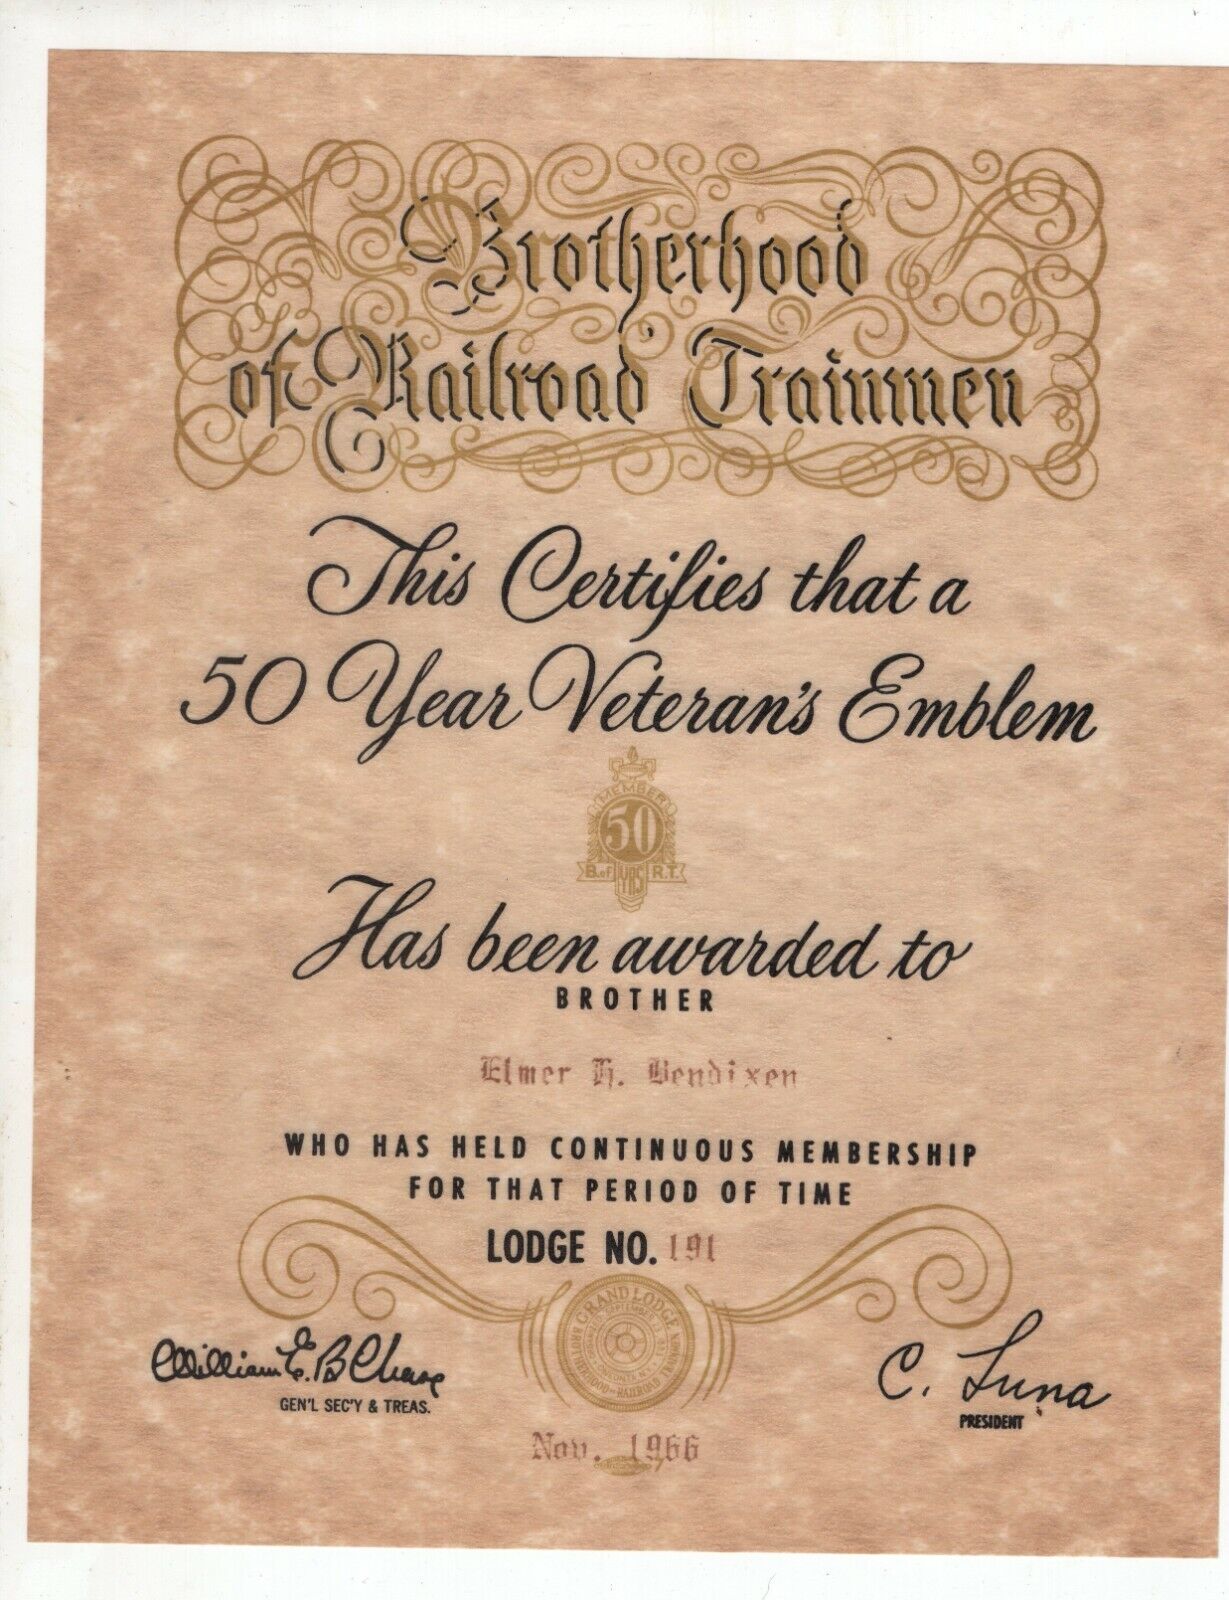 1966 Brotherhood of Railroad Trainmen Certificate for 50 Year Veteran\'s Emblem 